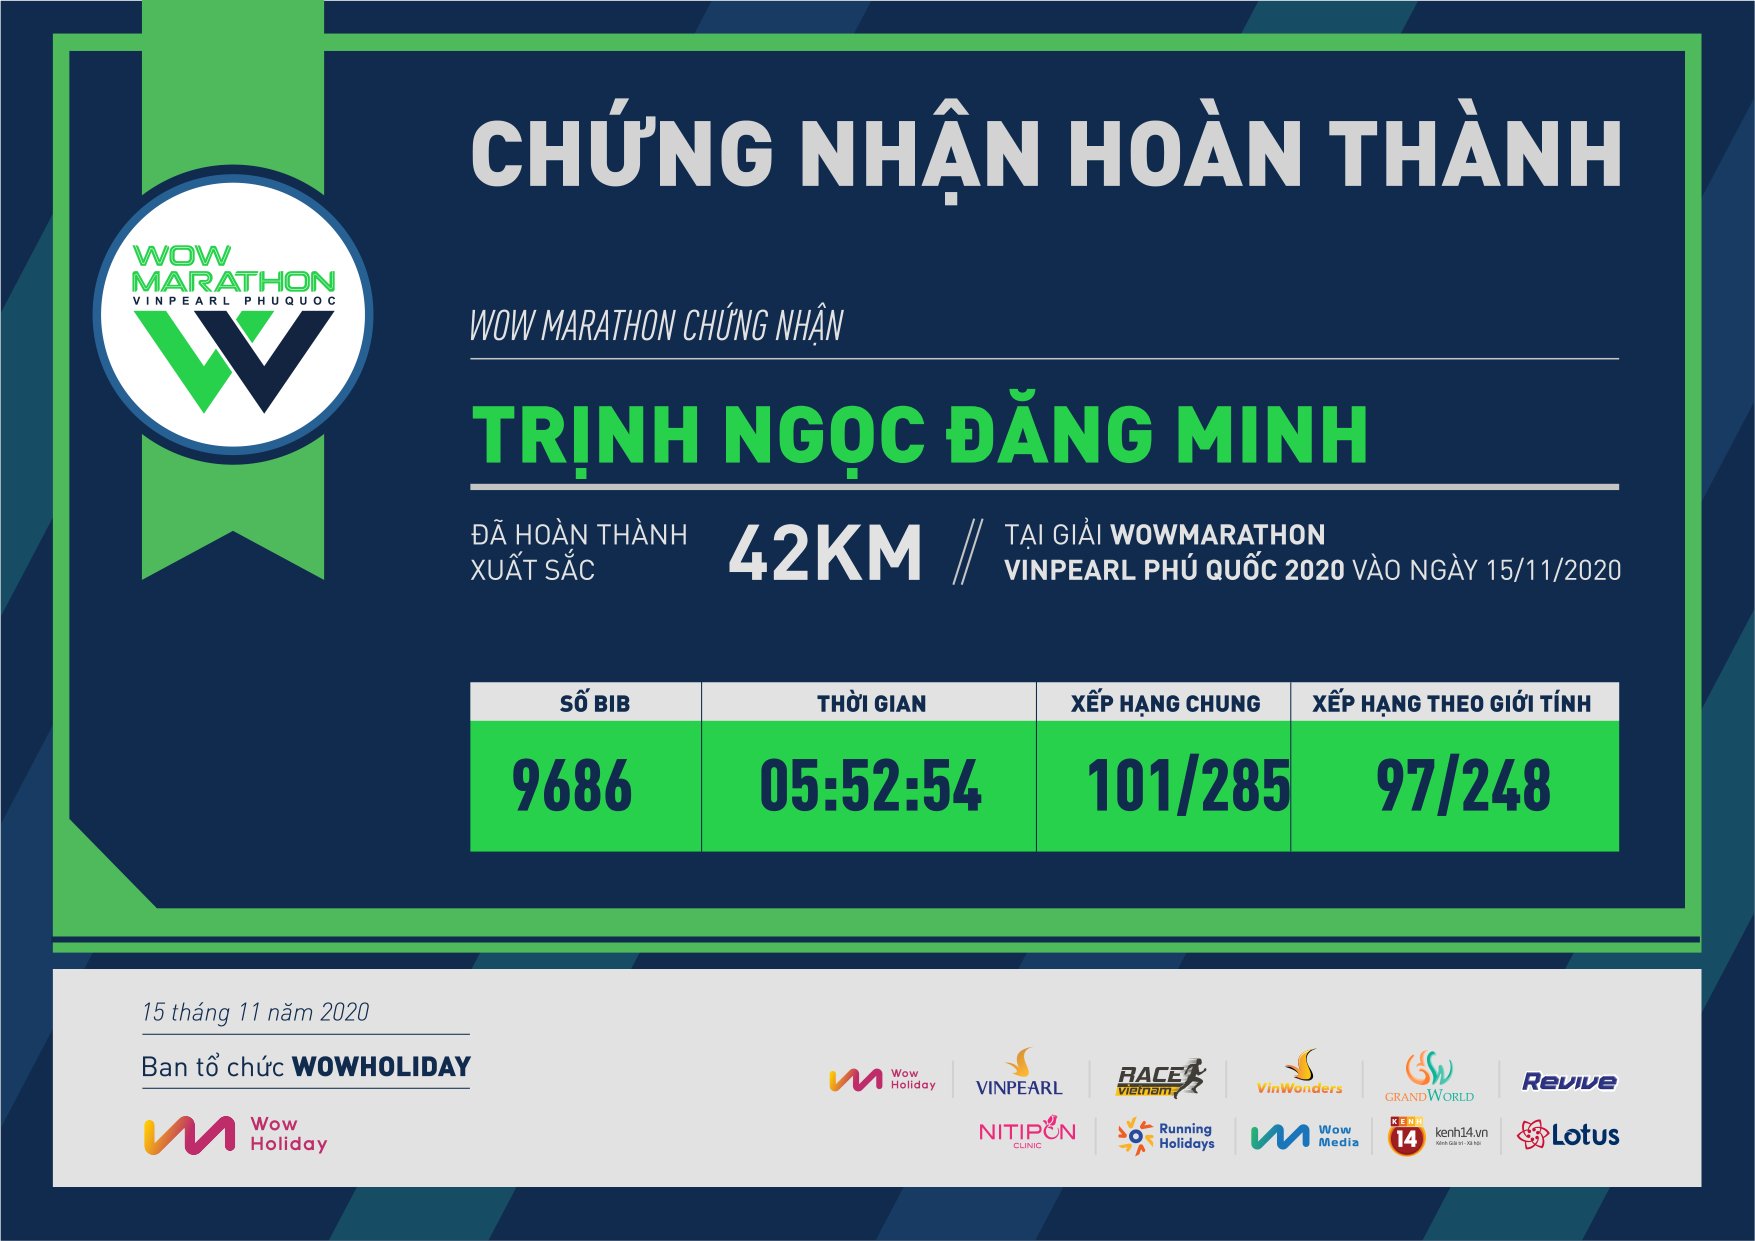 9686 - Trịnh Ngọc Đăng Minh